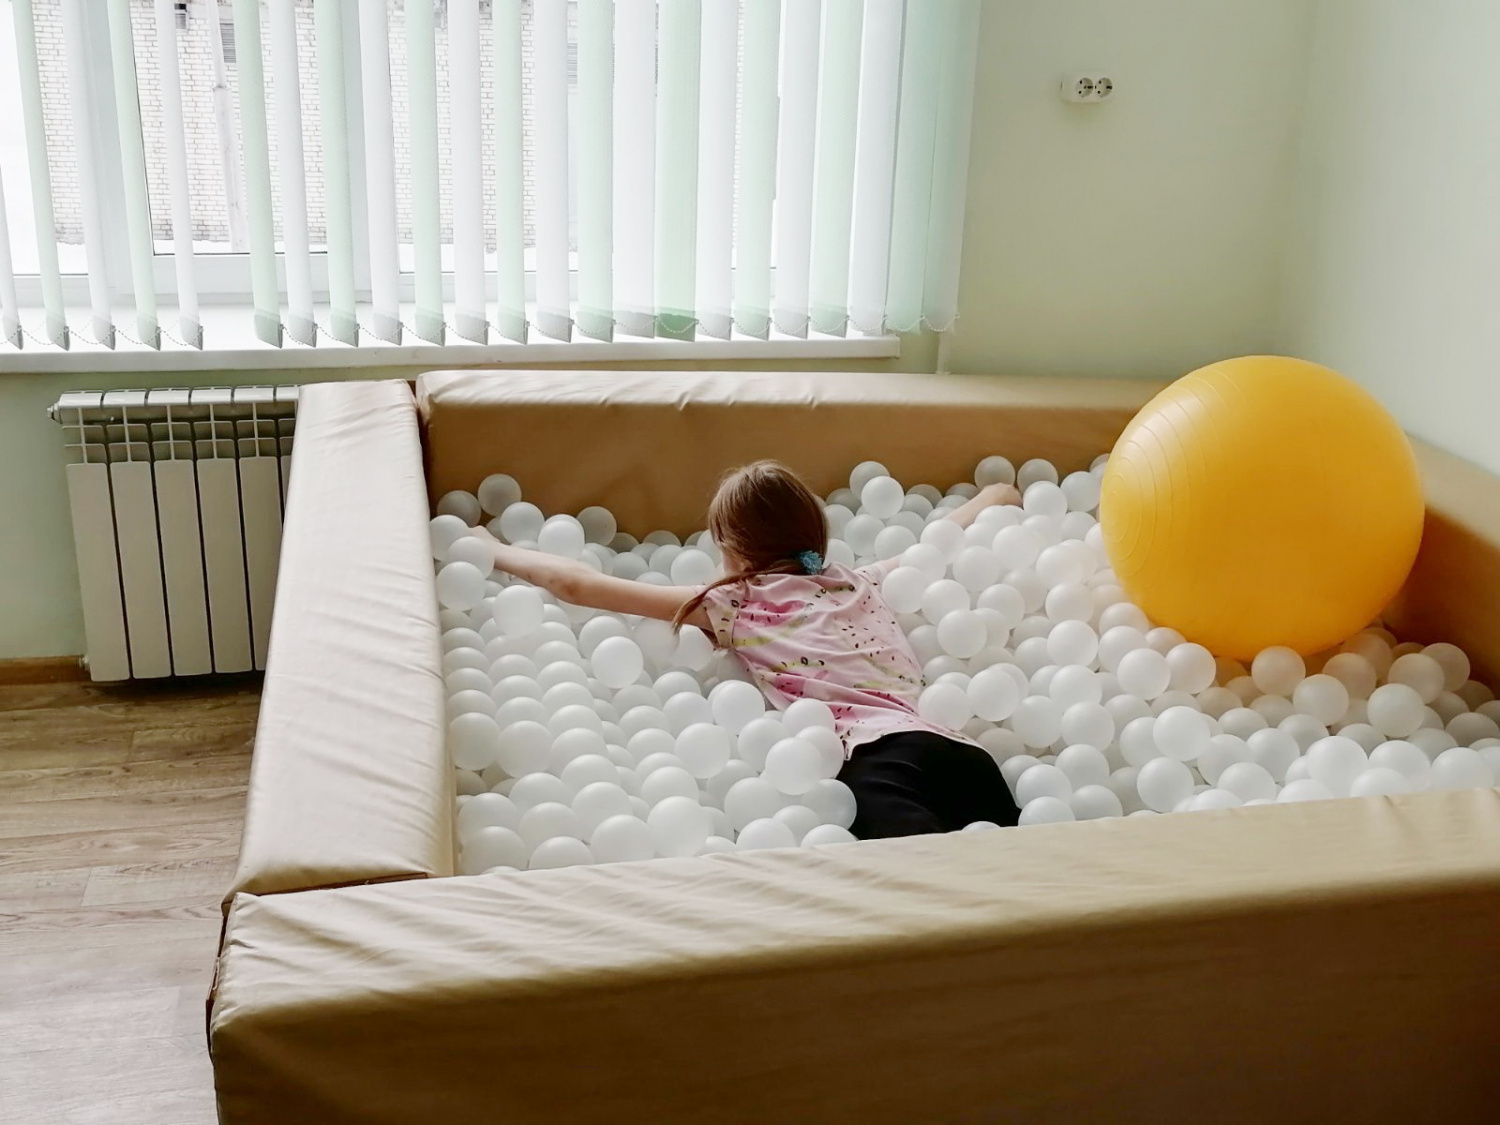 В Кузнецкой межрайонной детской больнице улучшены условия для медицинской реабилитации юных пациентов